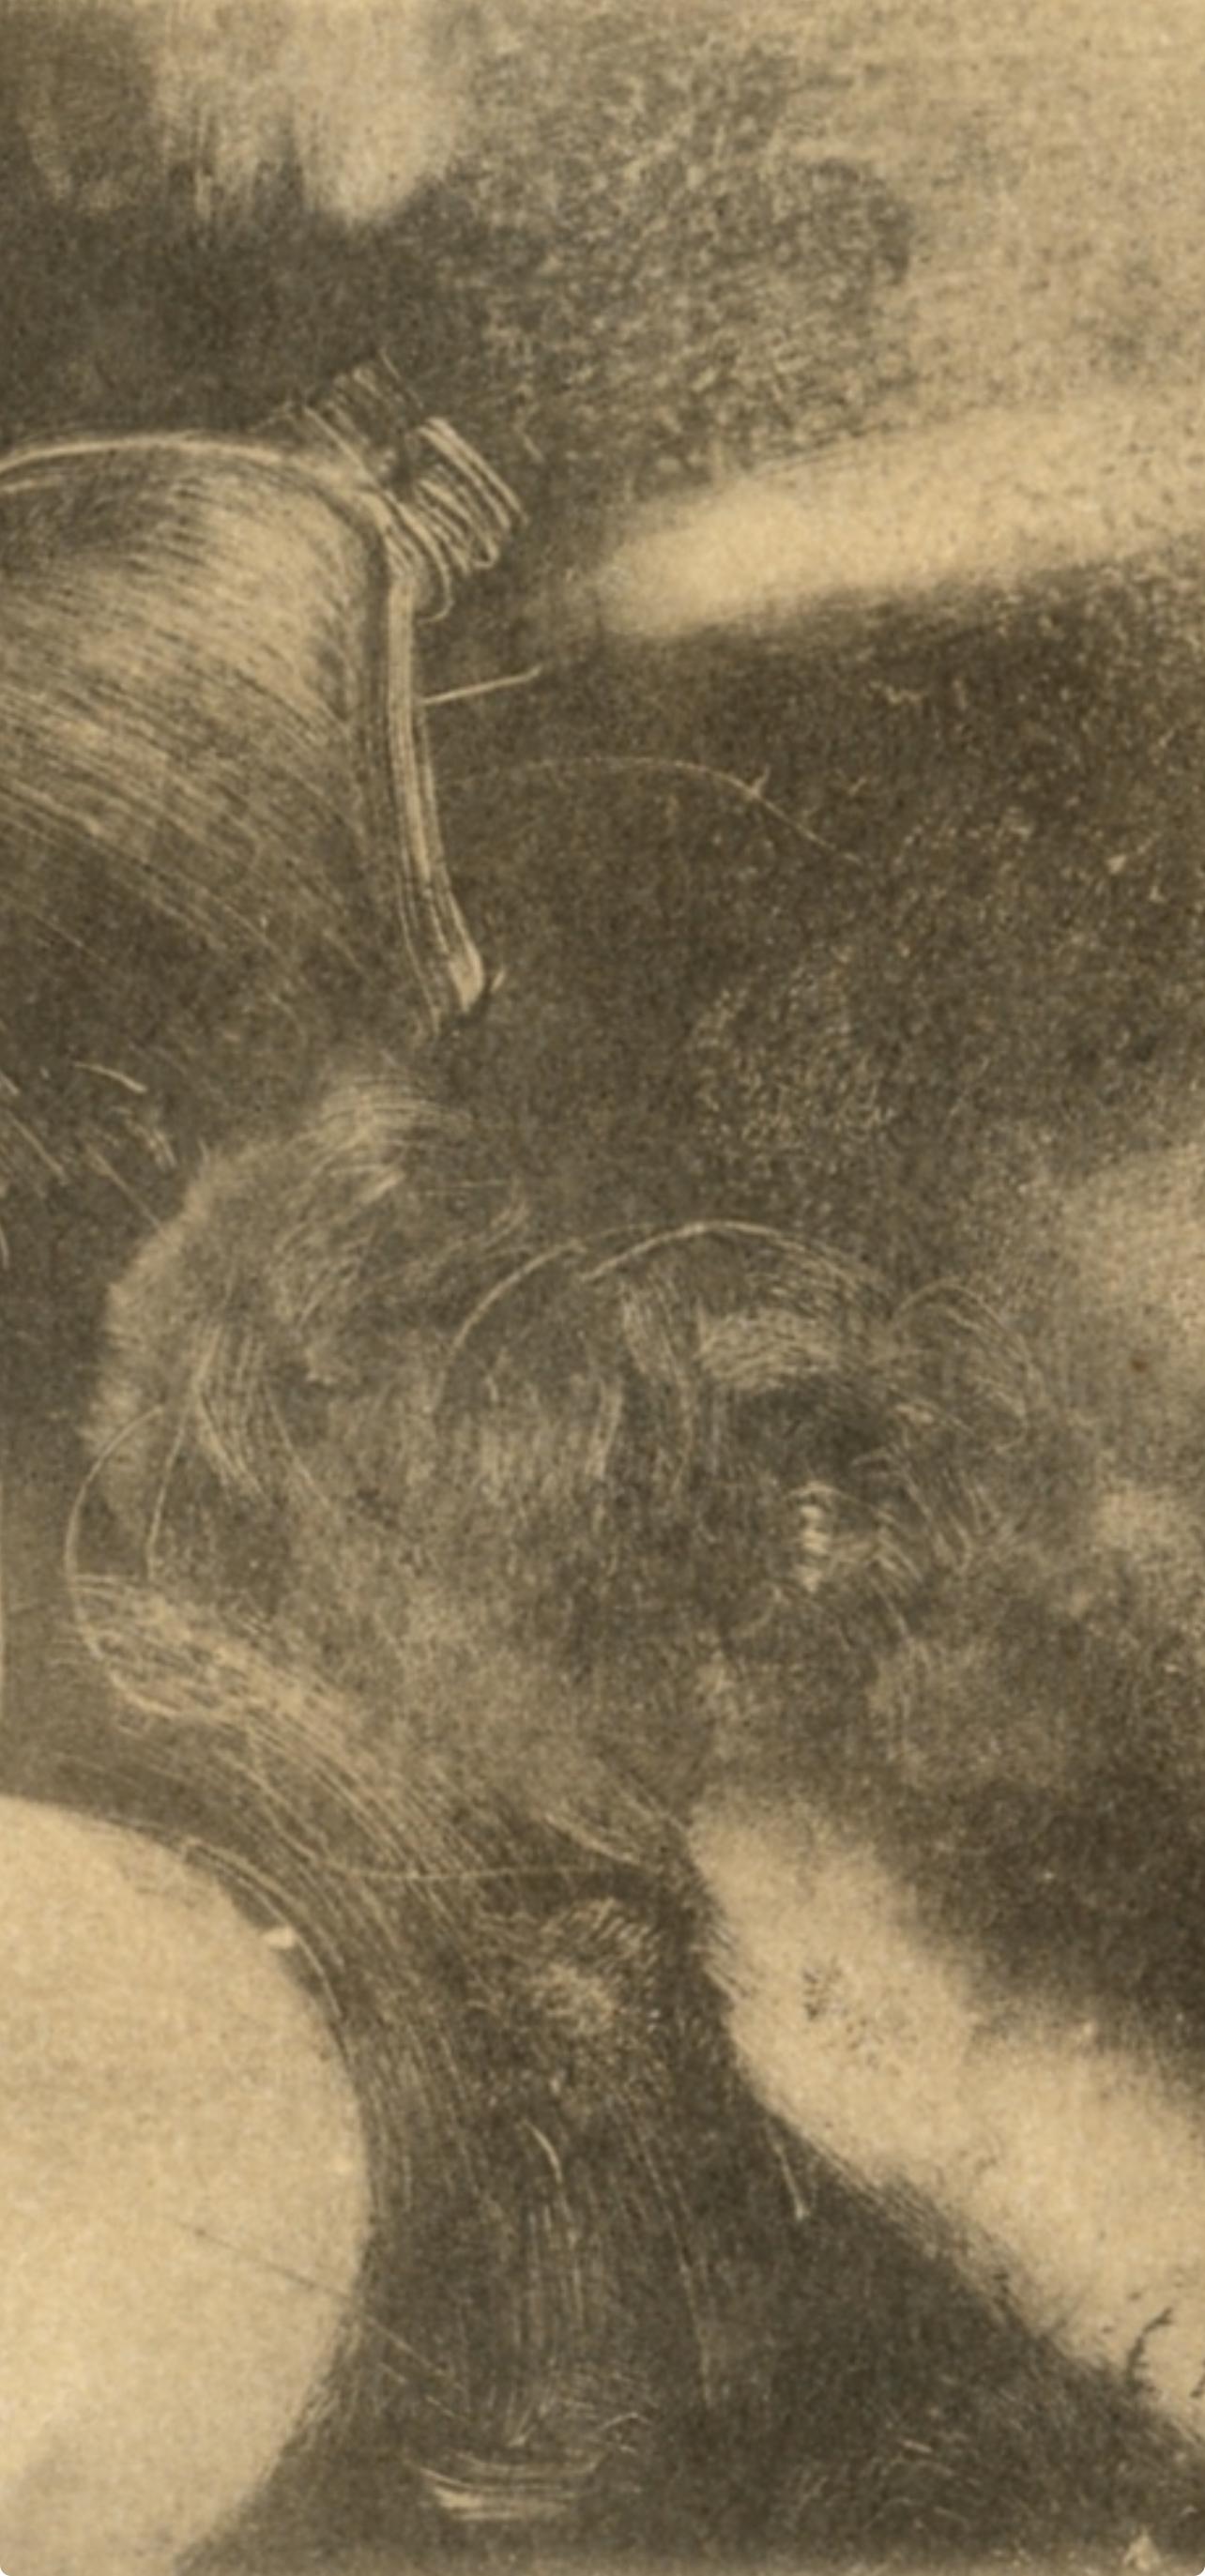 Degas, Nu couche, Les Monotypes (nach) – Print von Edgar Degas